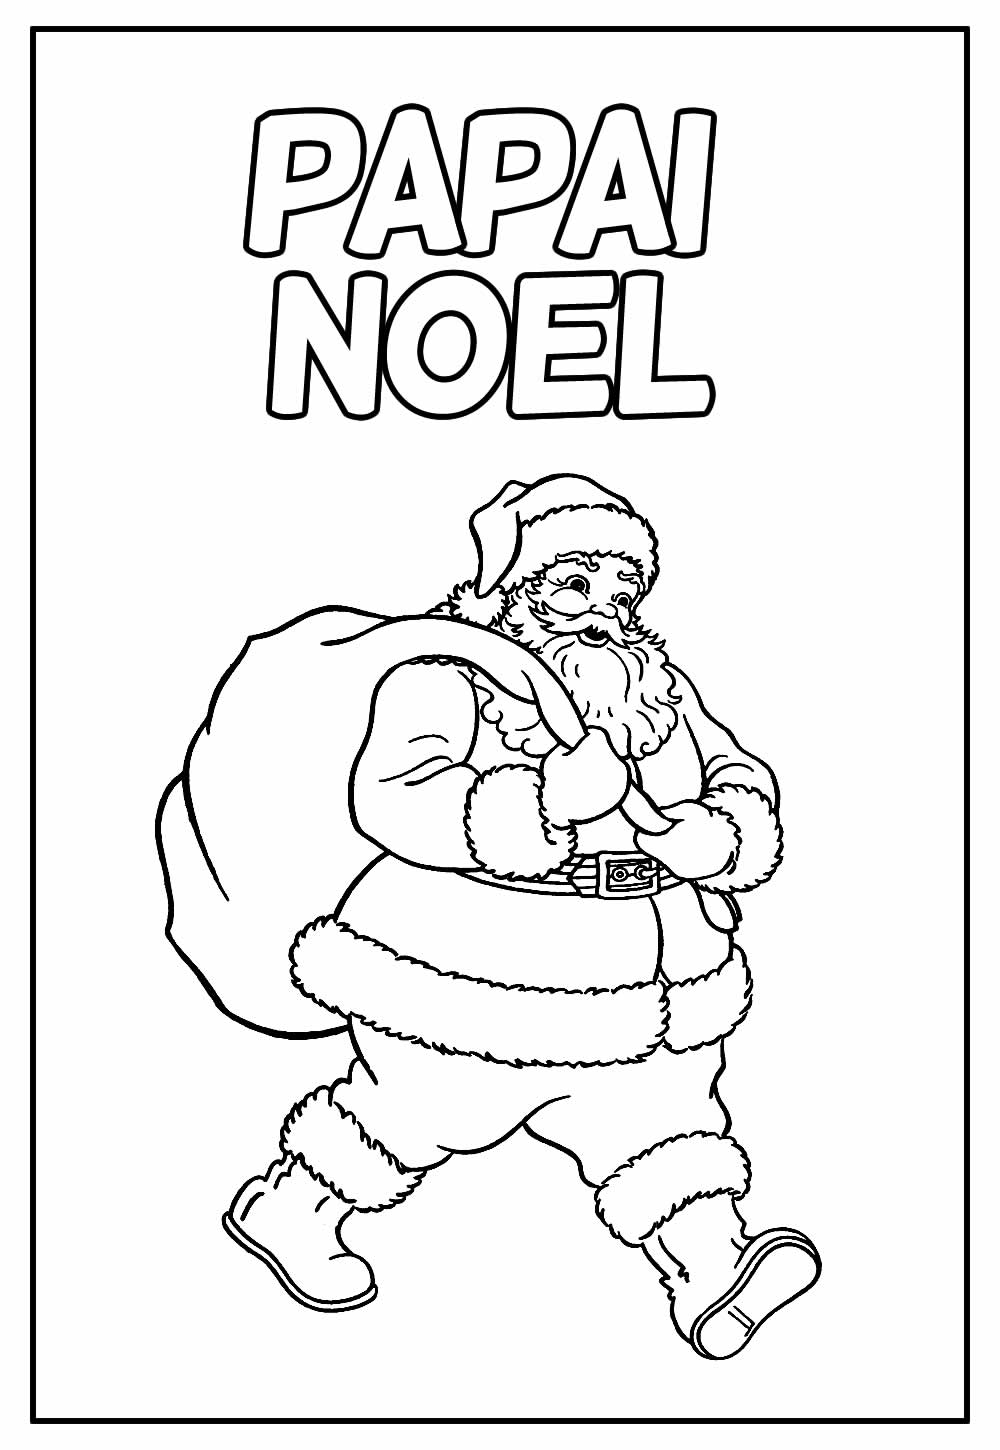 Desenho Educativo do Papai Noel para imprimir e colorir